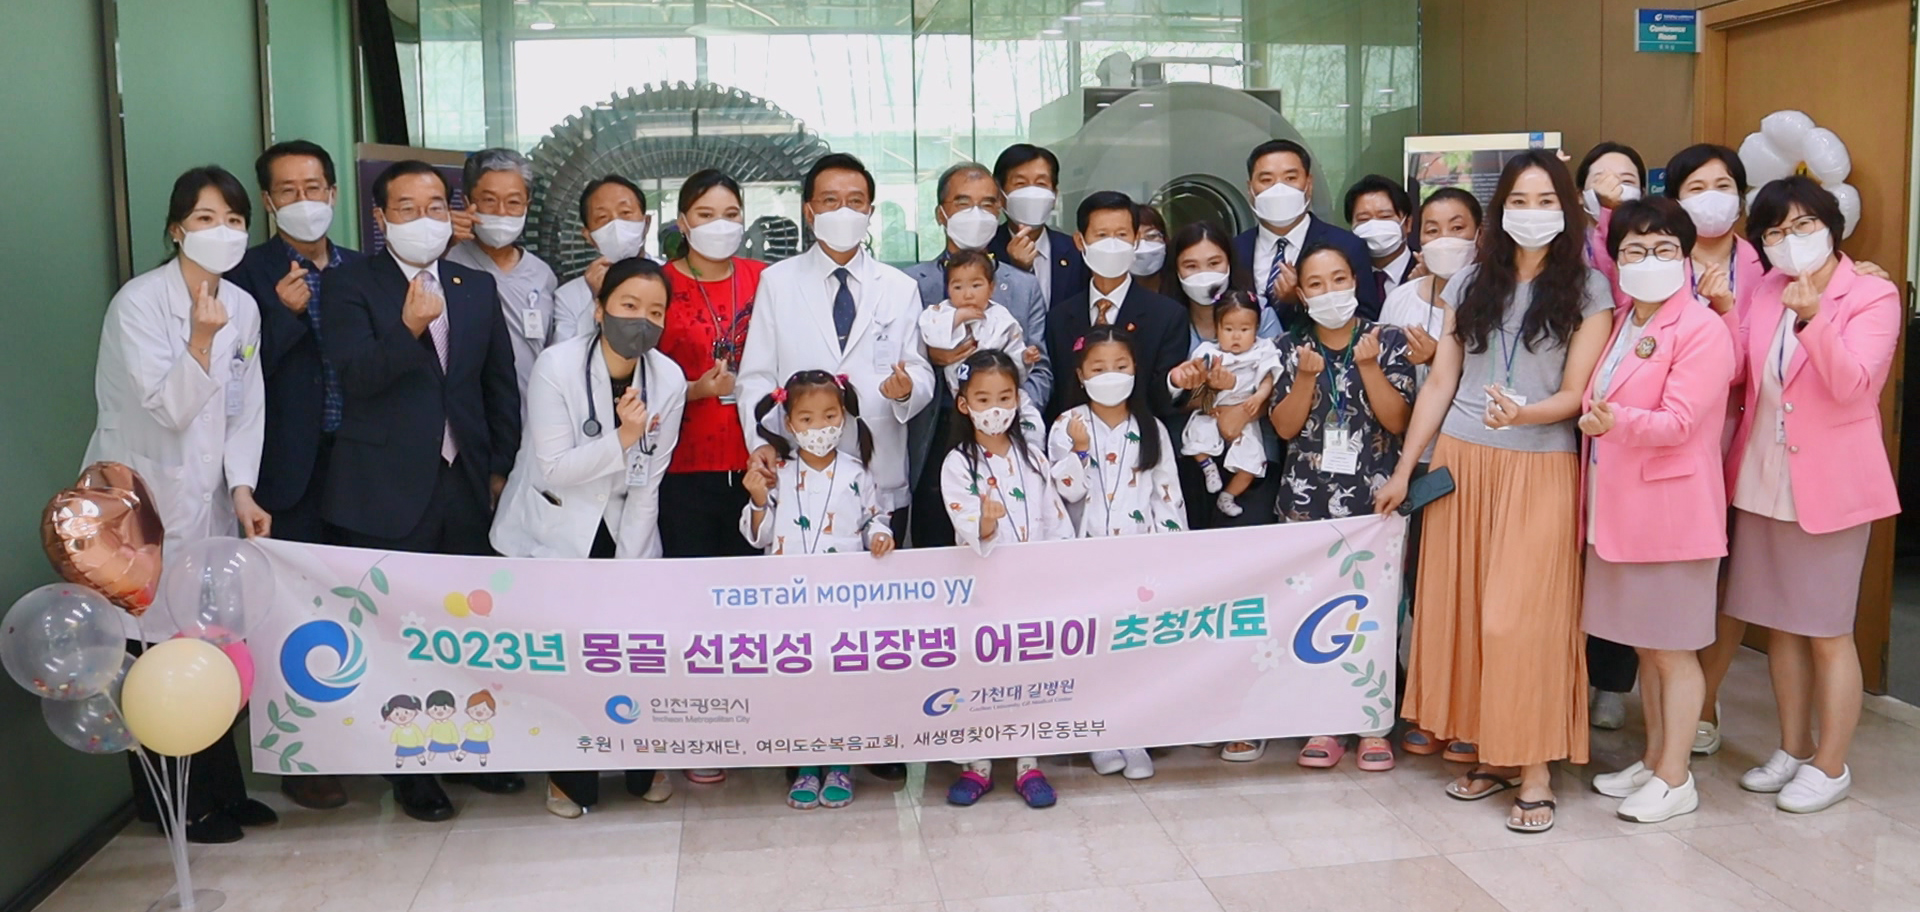 인천시 협력사업으로 몽골 심장병 어린이 초청 치료